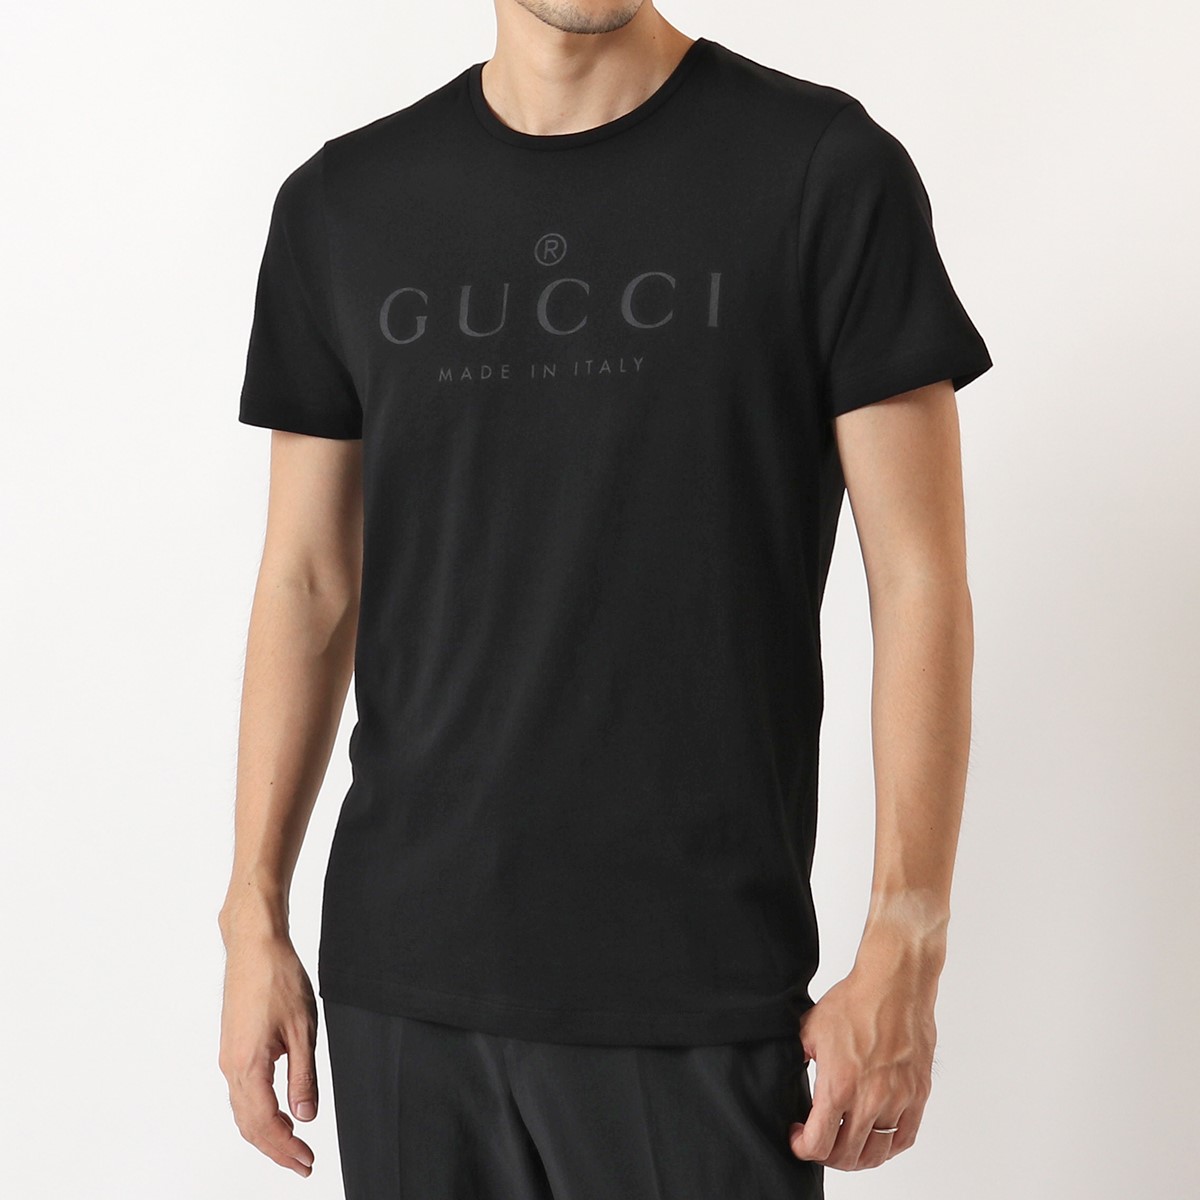 GUCCI グッチ 441685 X3A80 クルーネック 半袖 Tシャツ カットソー 1000 メンズ | インポートセレクト musee